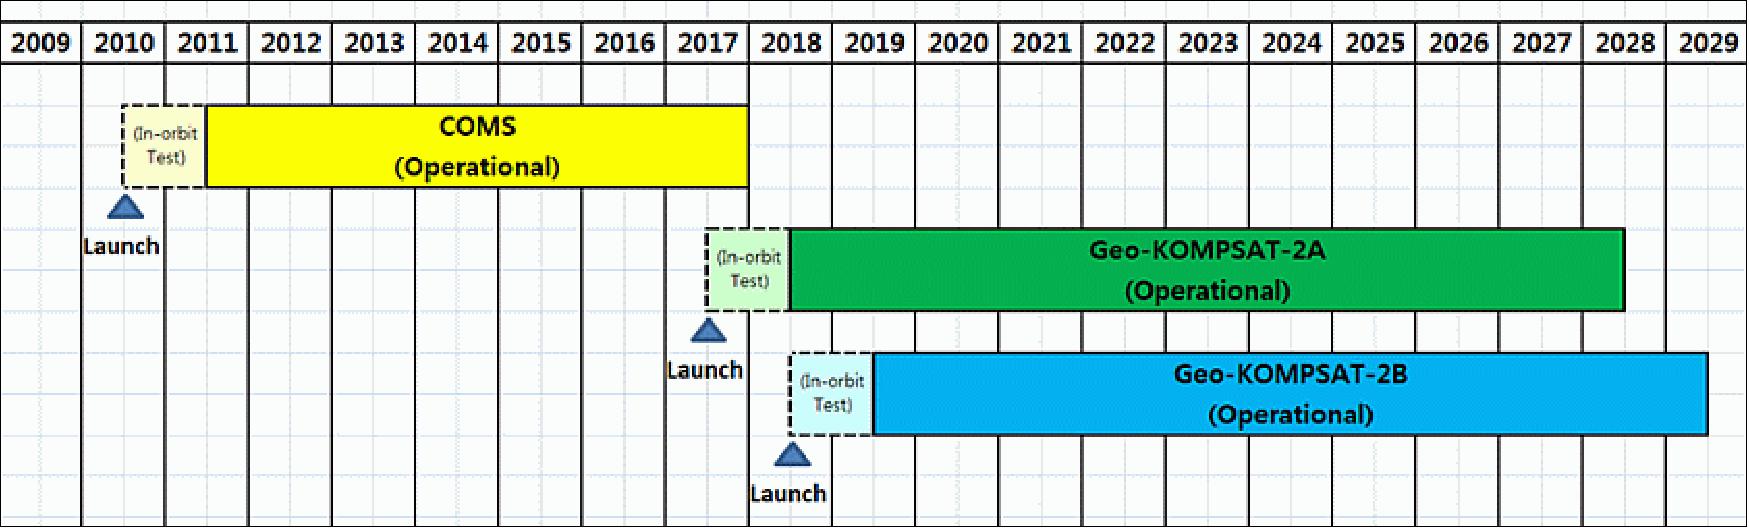 Figure 1: Schedule of the GEO-KOMPSAT-2 program (image credit: KMA/NMSC)